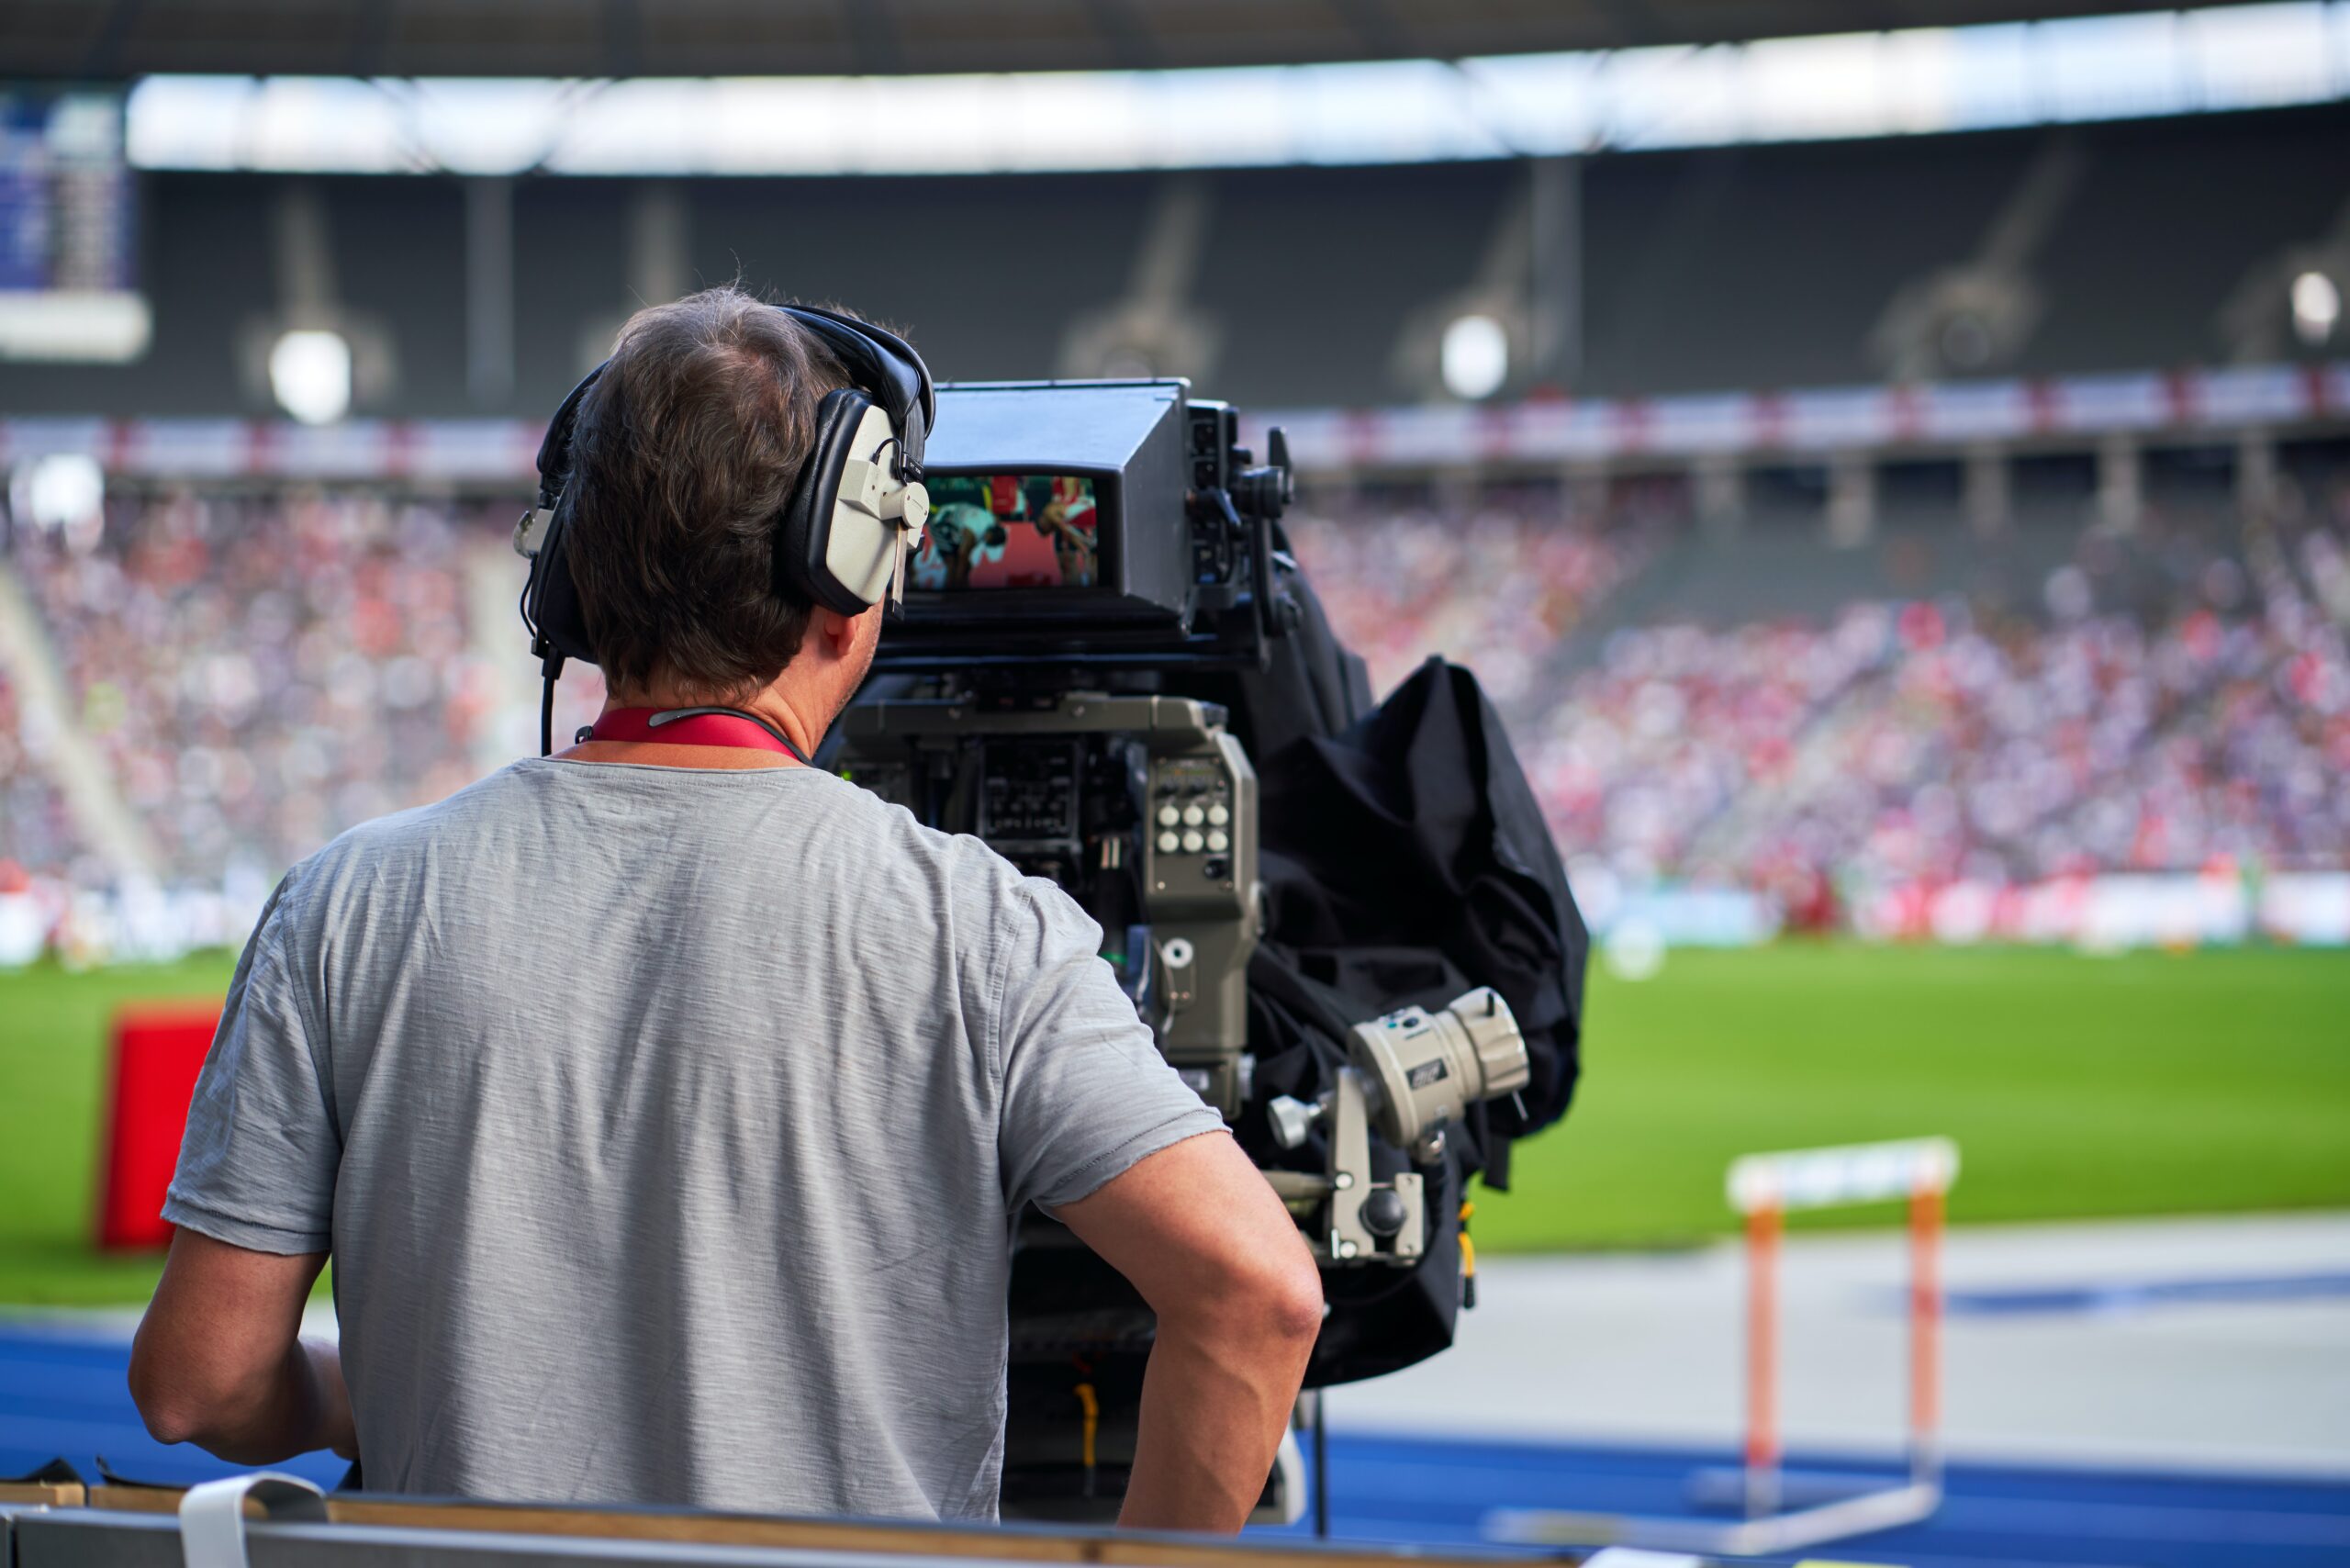 We zien het bovenlijf van een cameraman in een grijs t-shirt van achteren gefotografeerd, terwijl hij een sportevenement in een stadion filmt.